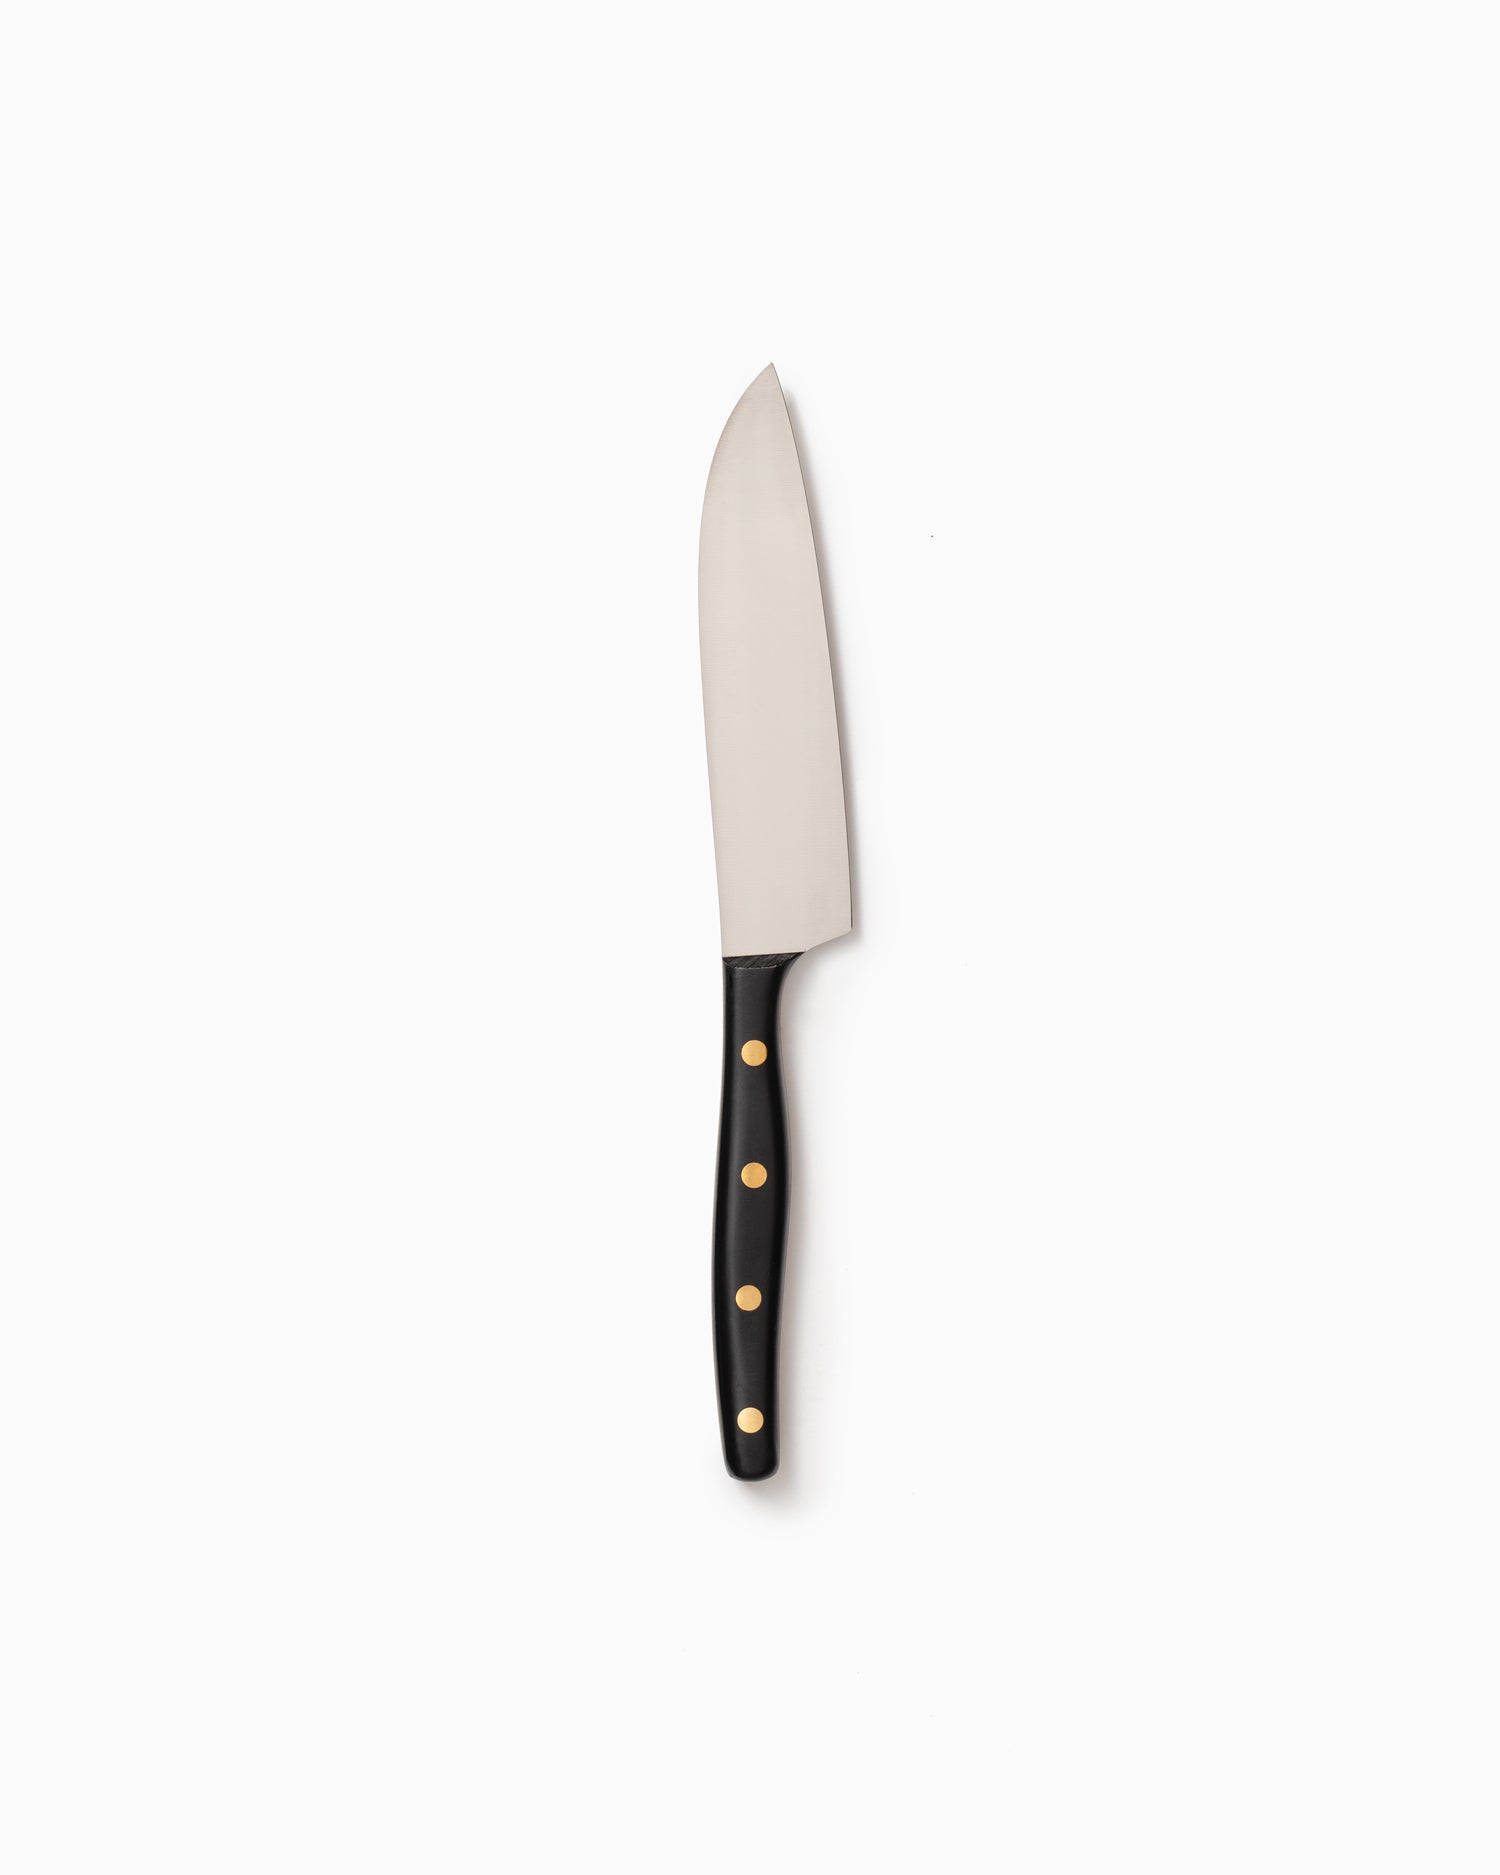 Robert Herder K3 Kitchen Knife - Stainless